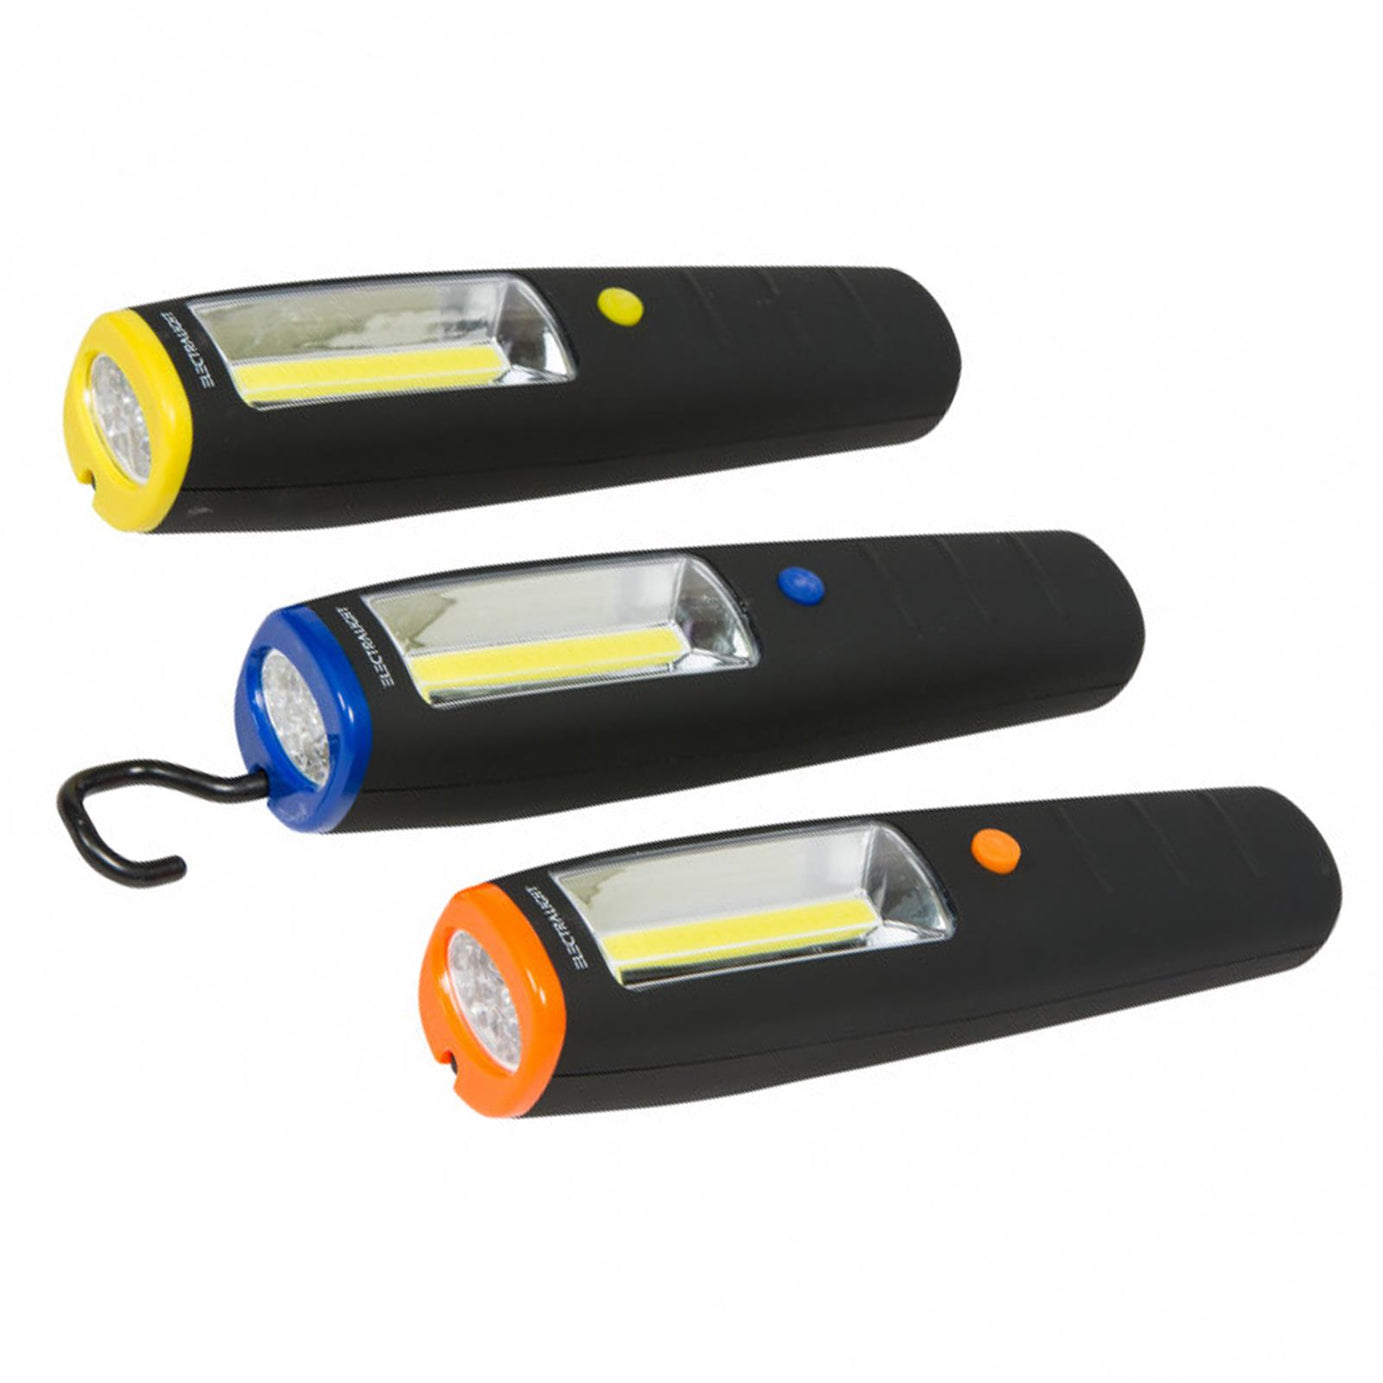 BlueSpot Electralight COB Work Light With Hook, Batteries and Magnet 150 Lumen